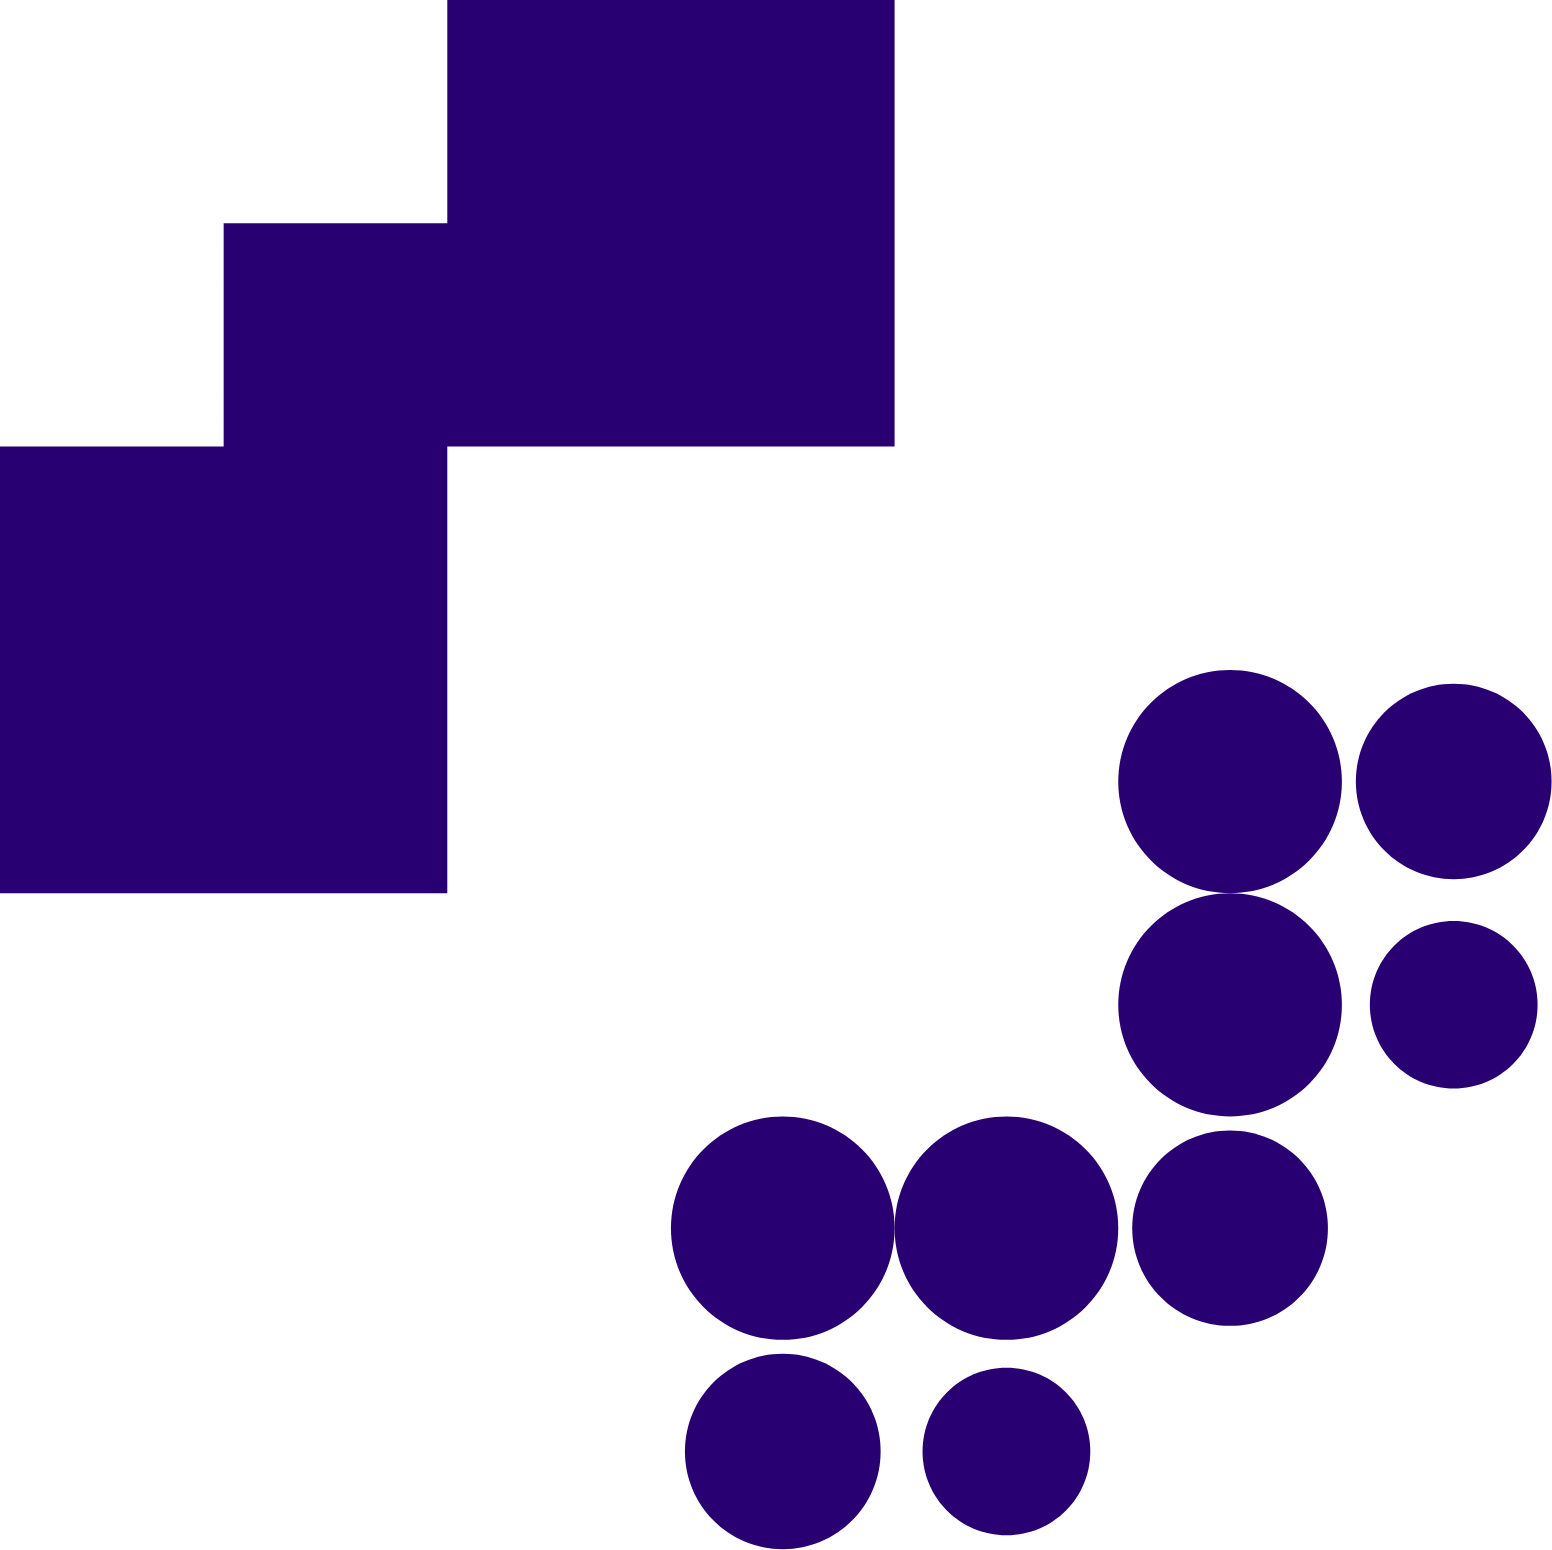 TietoEVRY logo (transparent PNG)